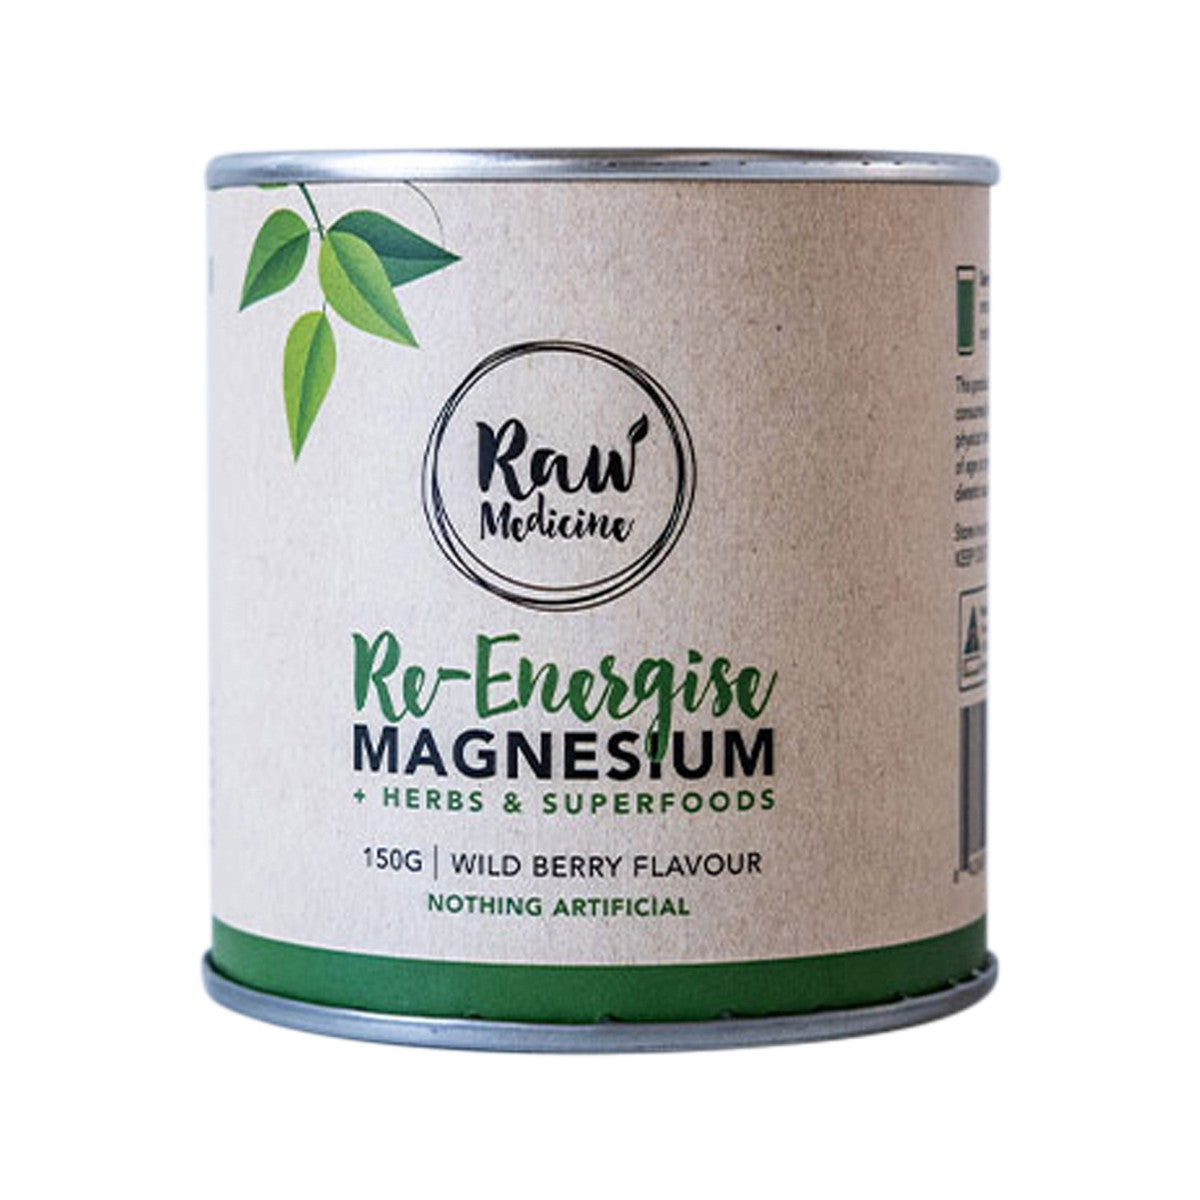 Raw Medicine Re Energise Magnesium 150g